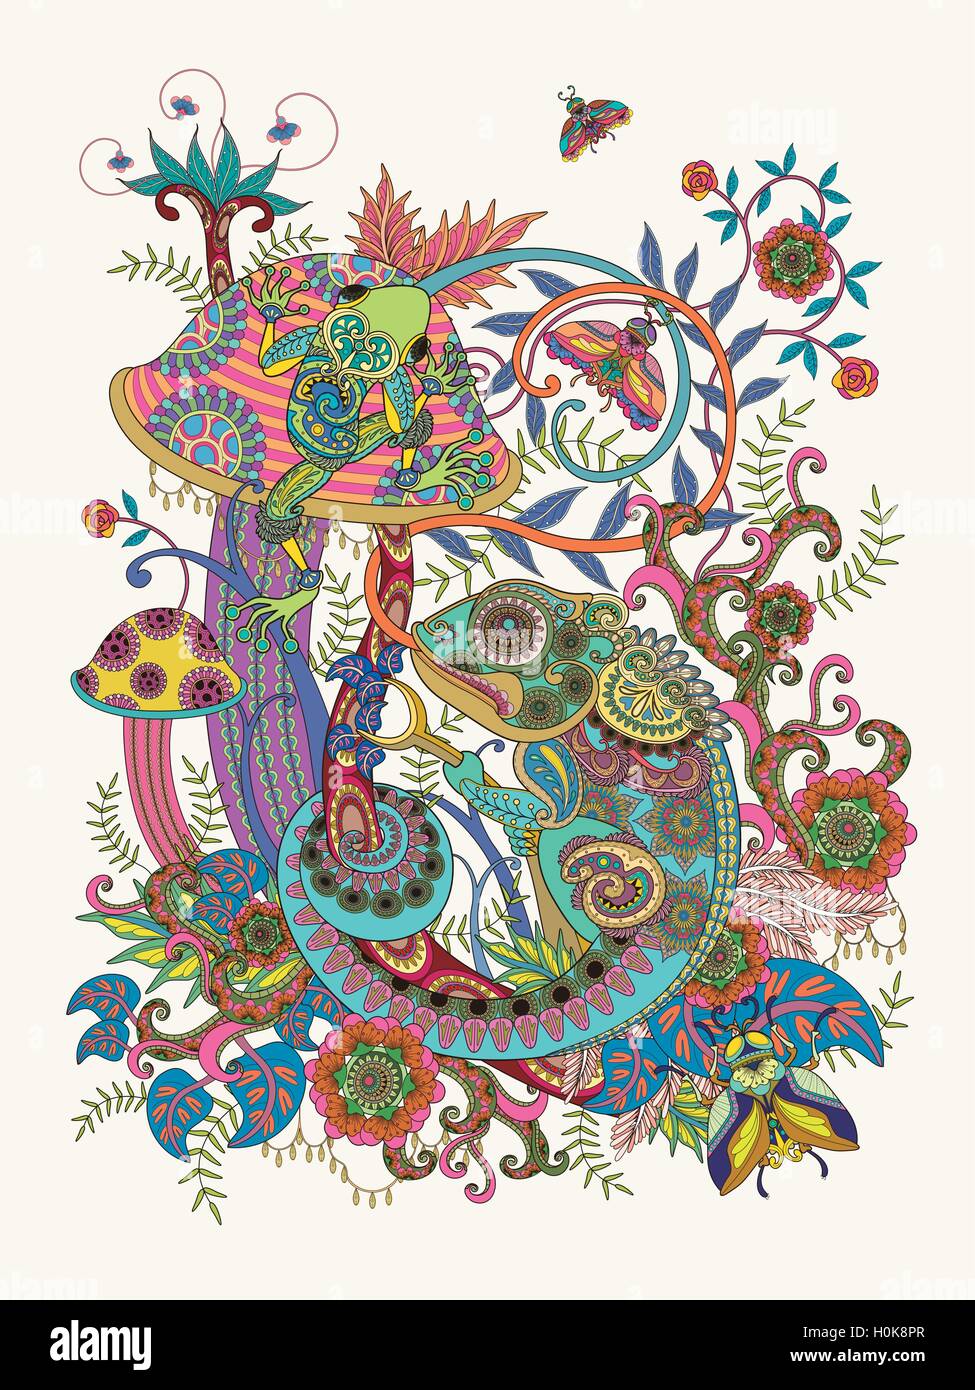 Wunderschöne Erwachsenen Färbung Seite, Frosch und Chamäleon auf bunten Pilz, florale Dekorationselemente um sie herum. Stock Vektor